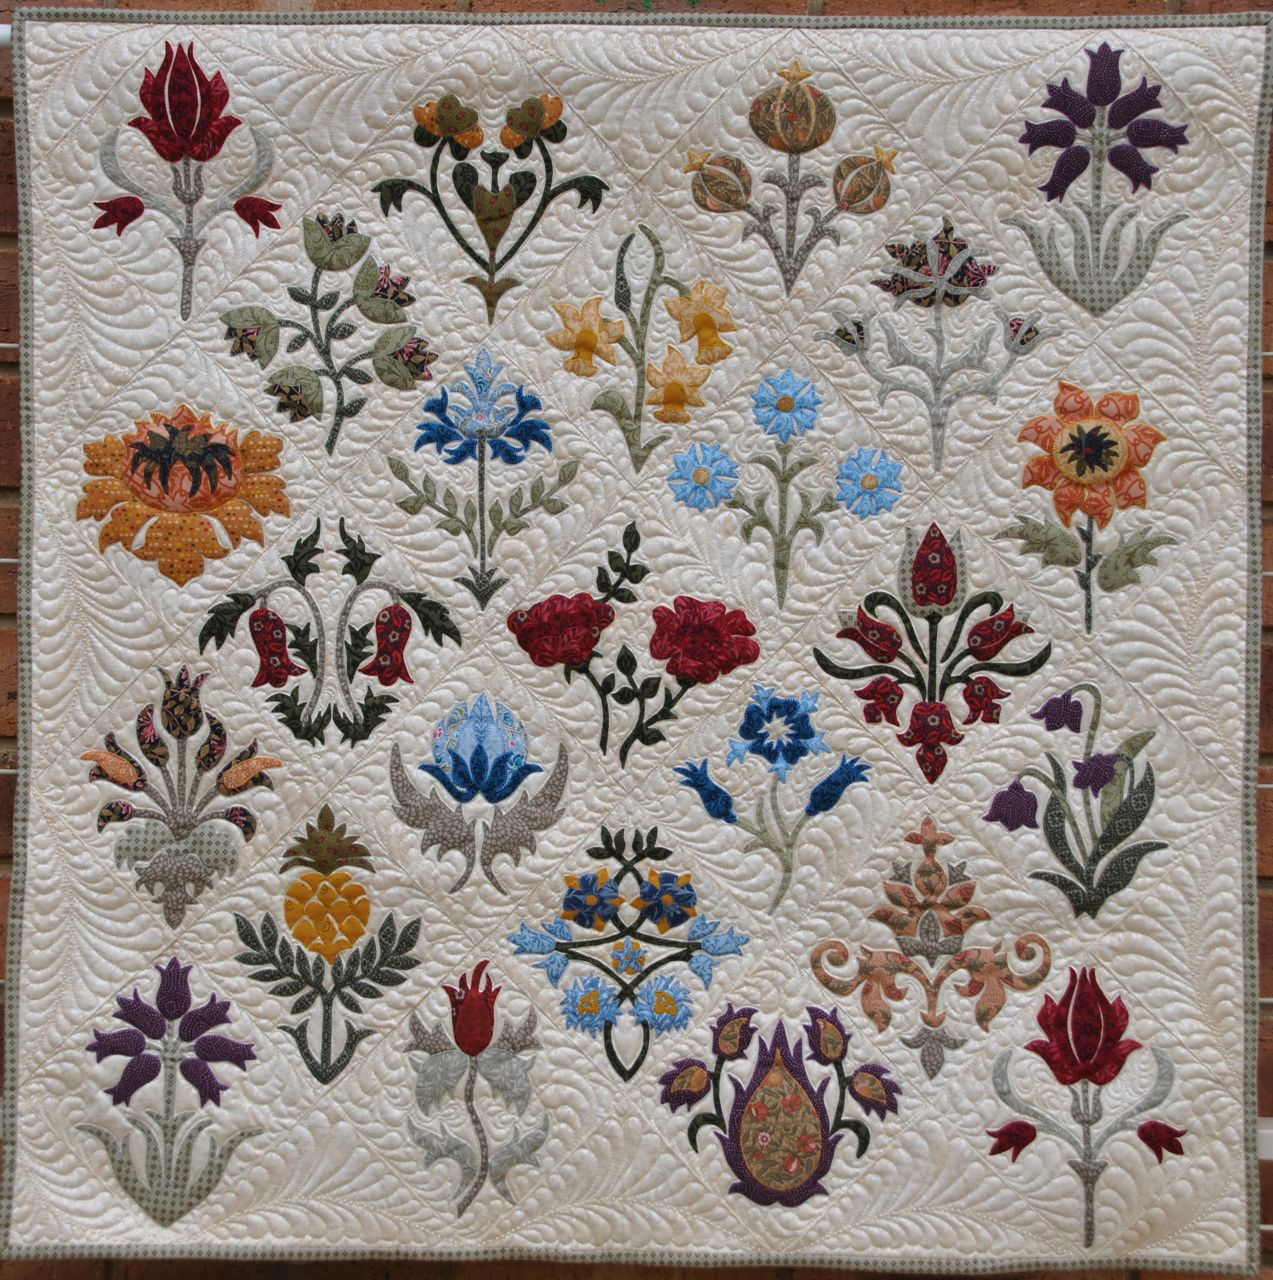 William Morris Embroidery Patterns William Morris In Quilting June 2016